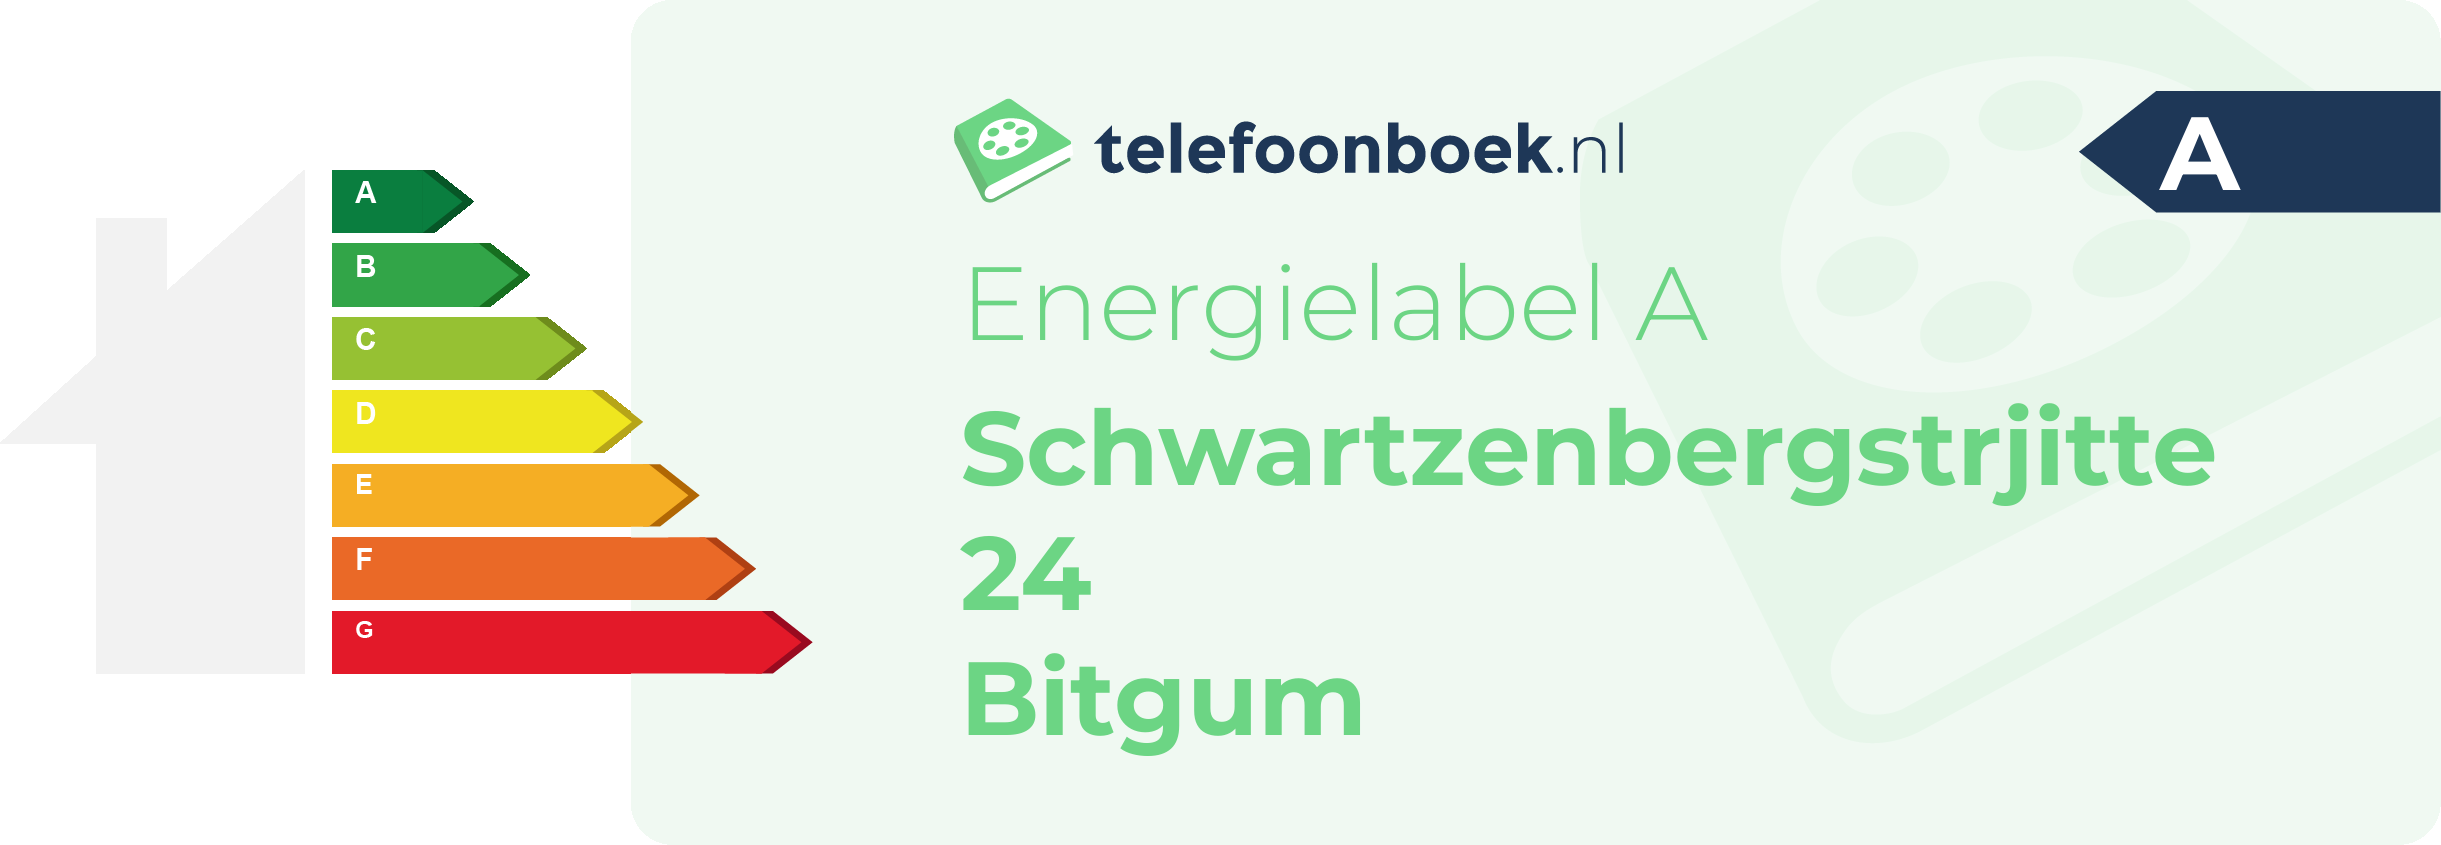 Energielabel Schwartzenbergstrjitte 24 Bitgum